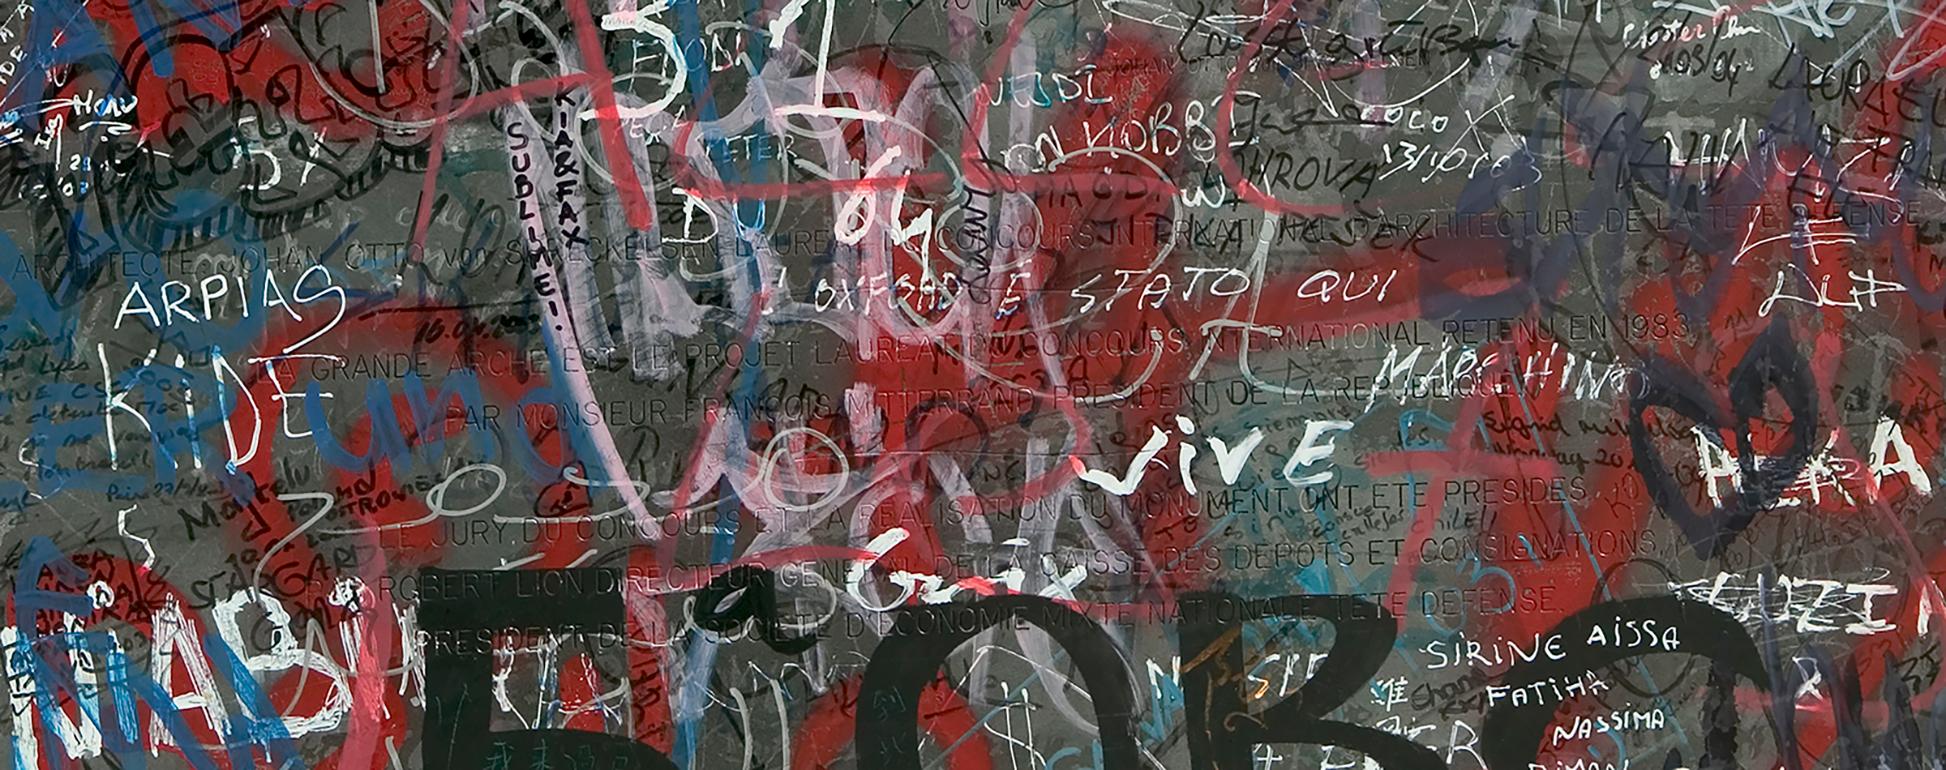 ian en graffiti